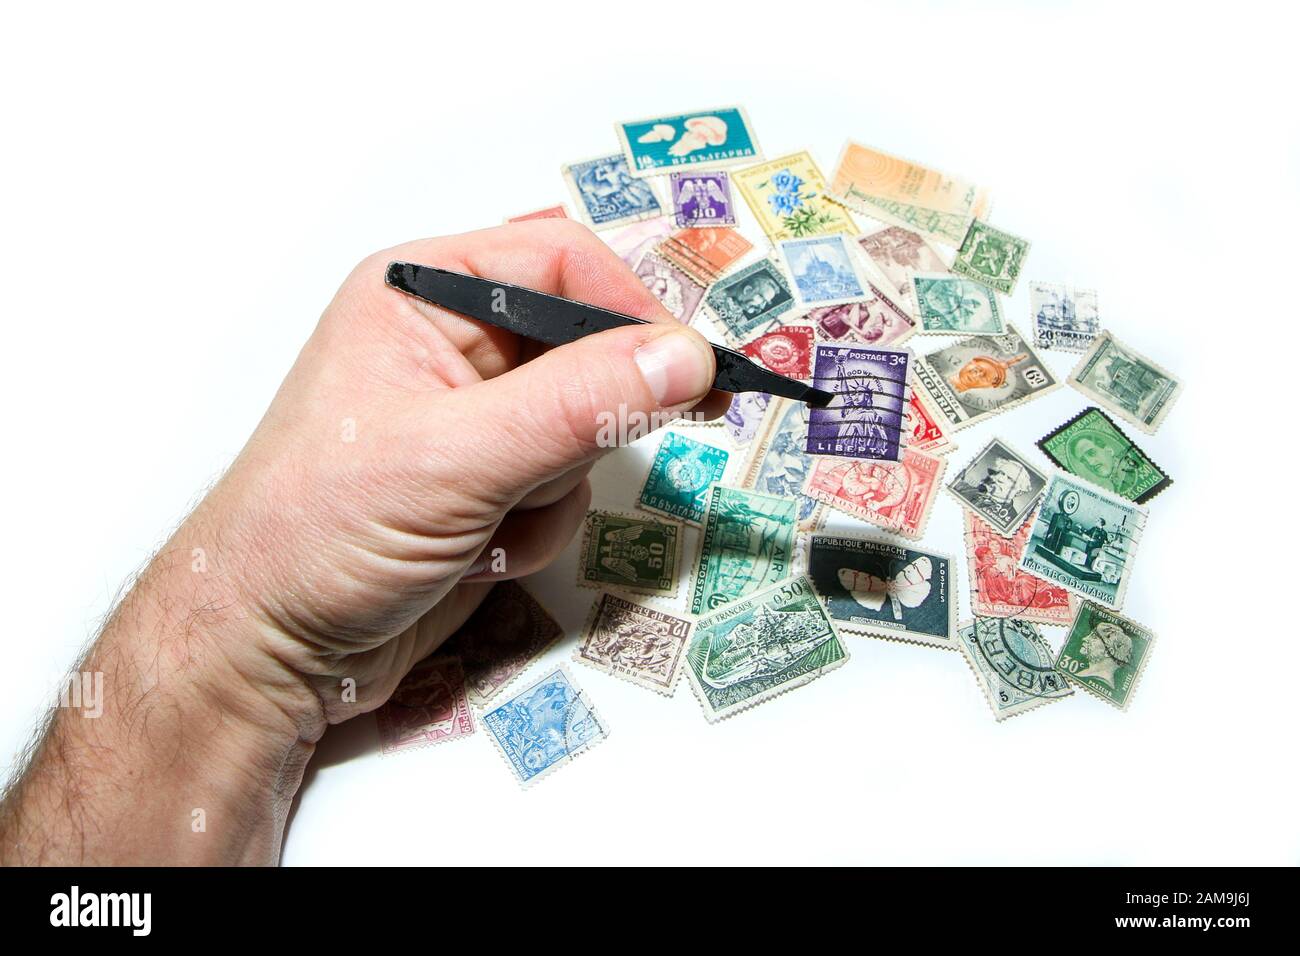 Una mano contiene un sello en el pincer. Varios otros sellos están mintiendo abajo. Philately es un hobby o también una inversión. Foto de stock